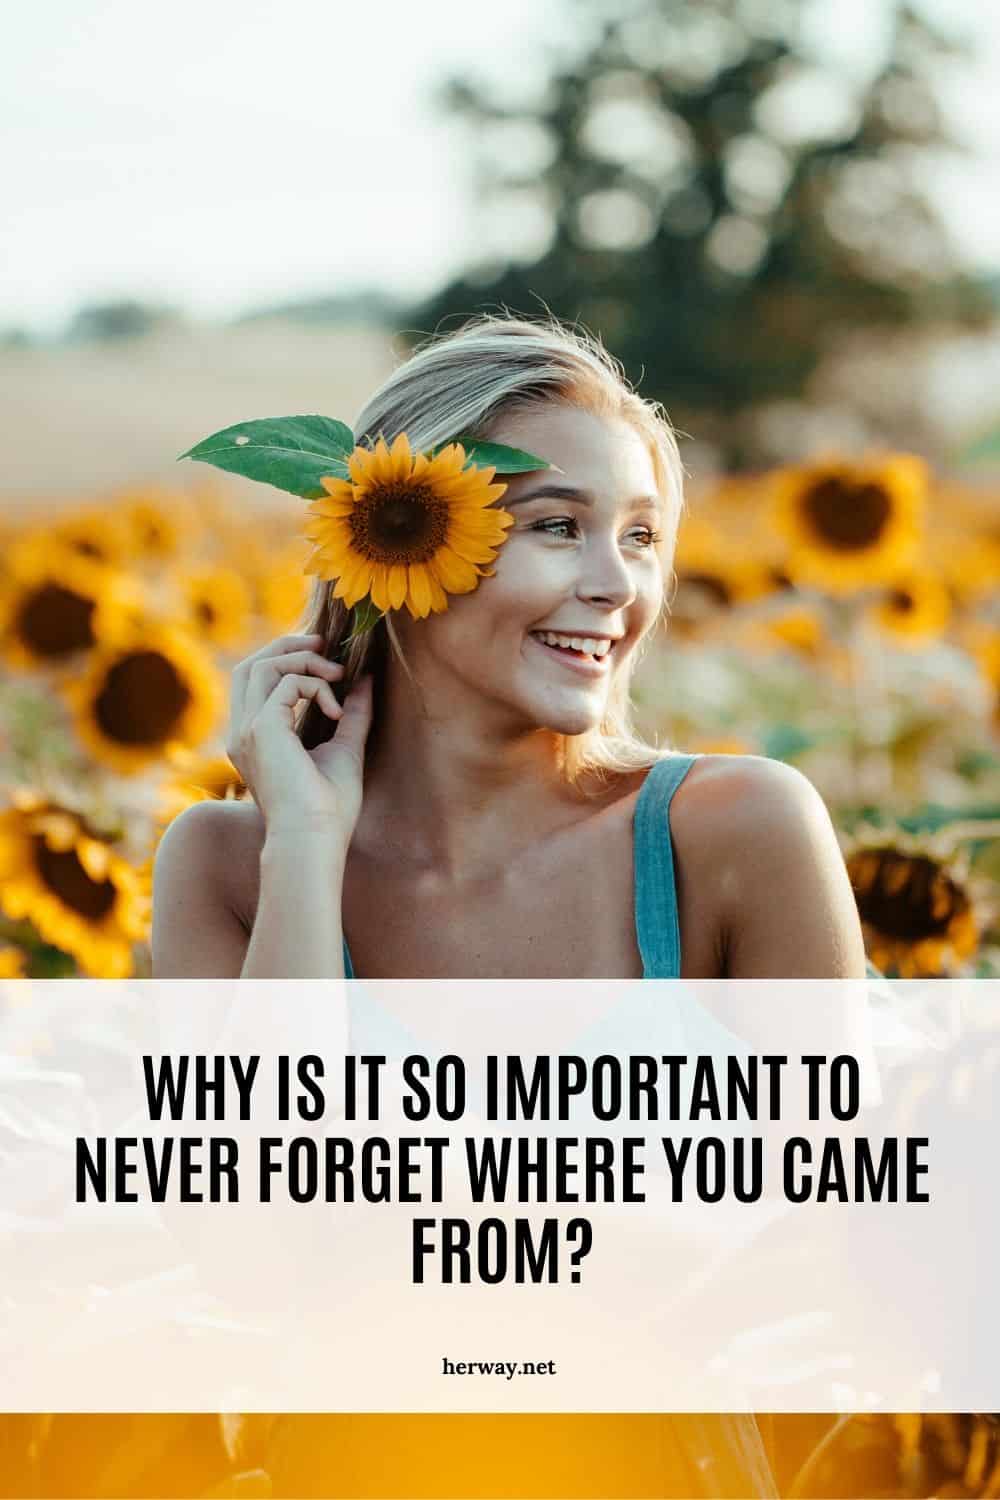 Perché è così importante non dimenticare mai da dove si viene?